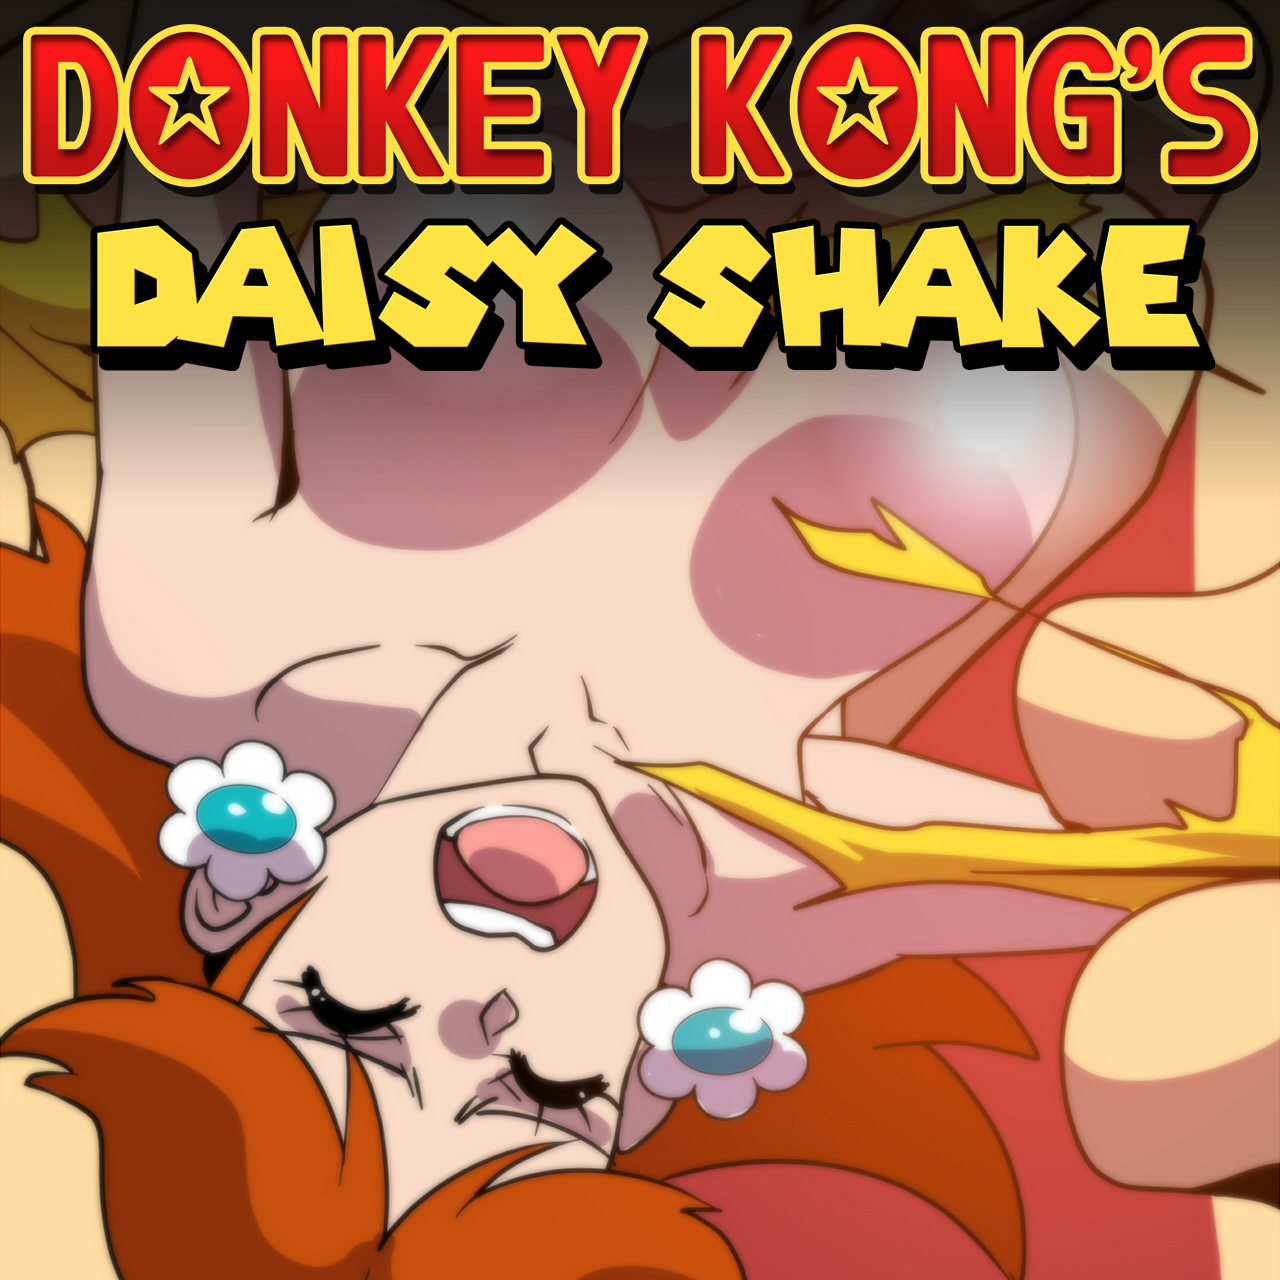 Donkey Kong's Daisy Shake